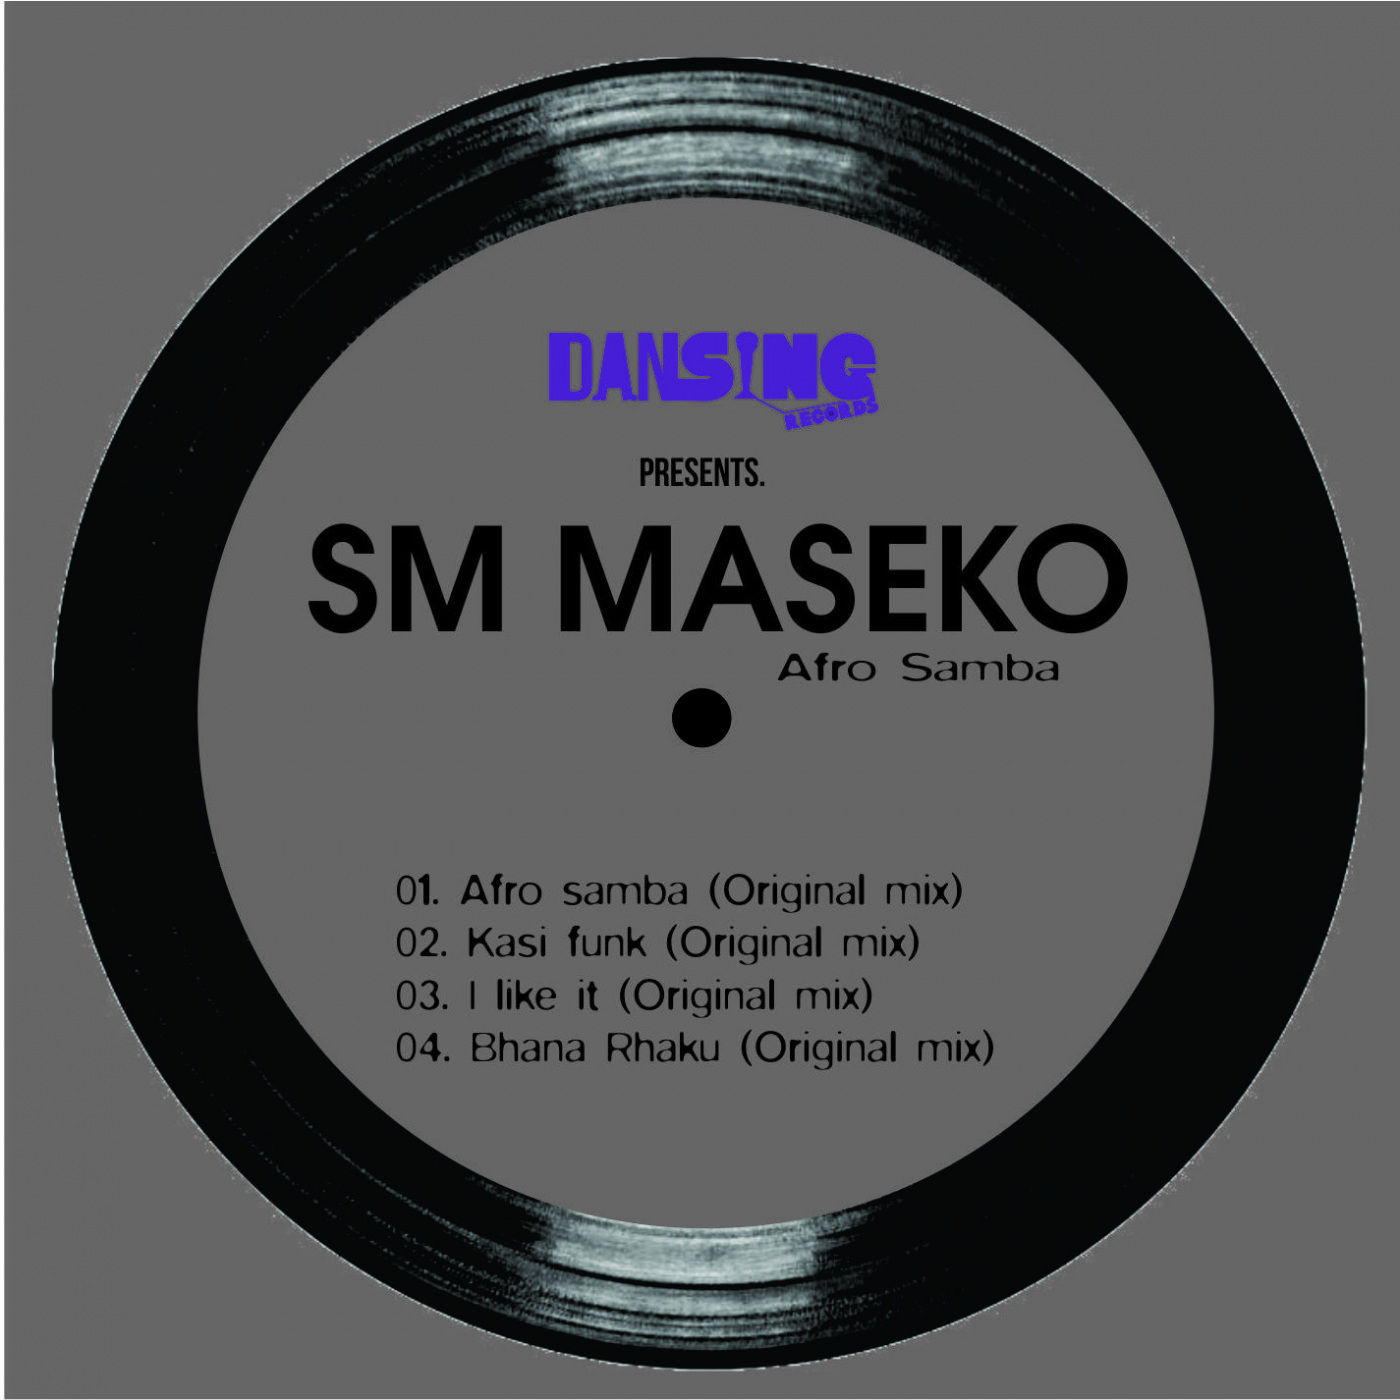 SM Maseko - Afro samba - EP / Dansing Records